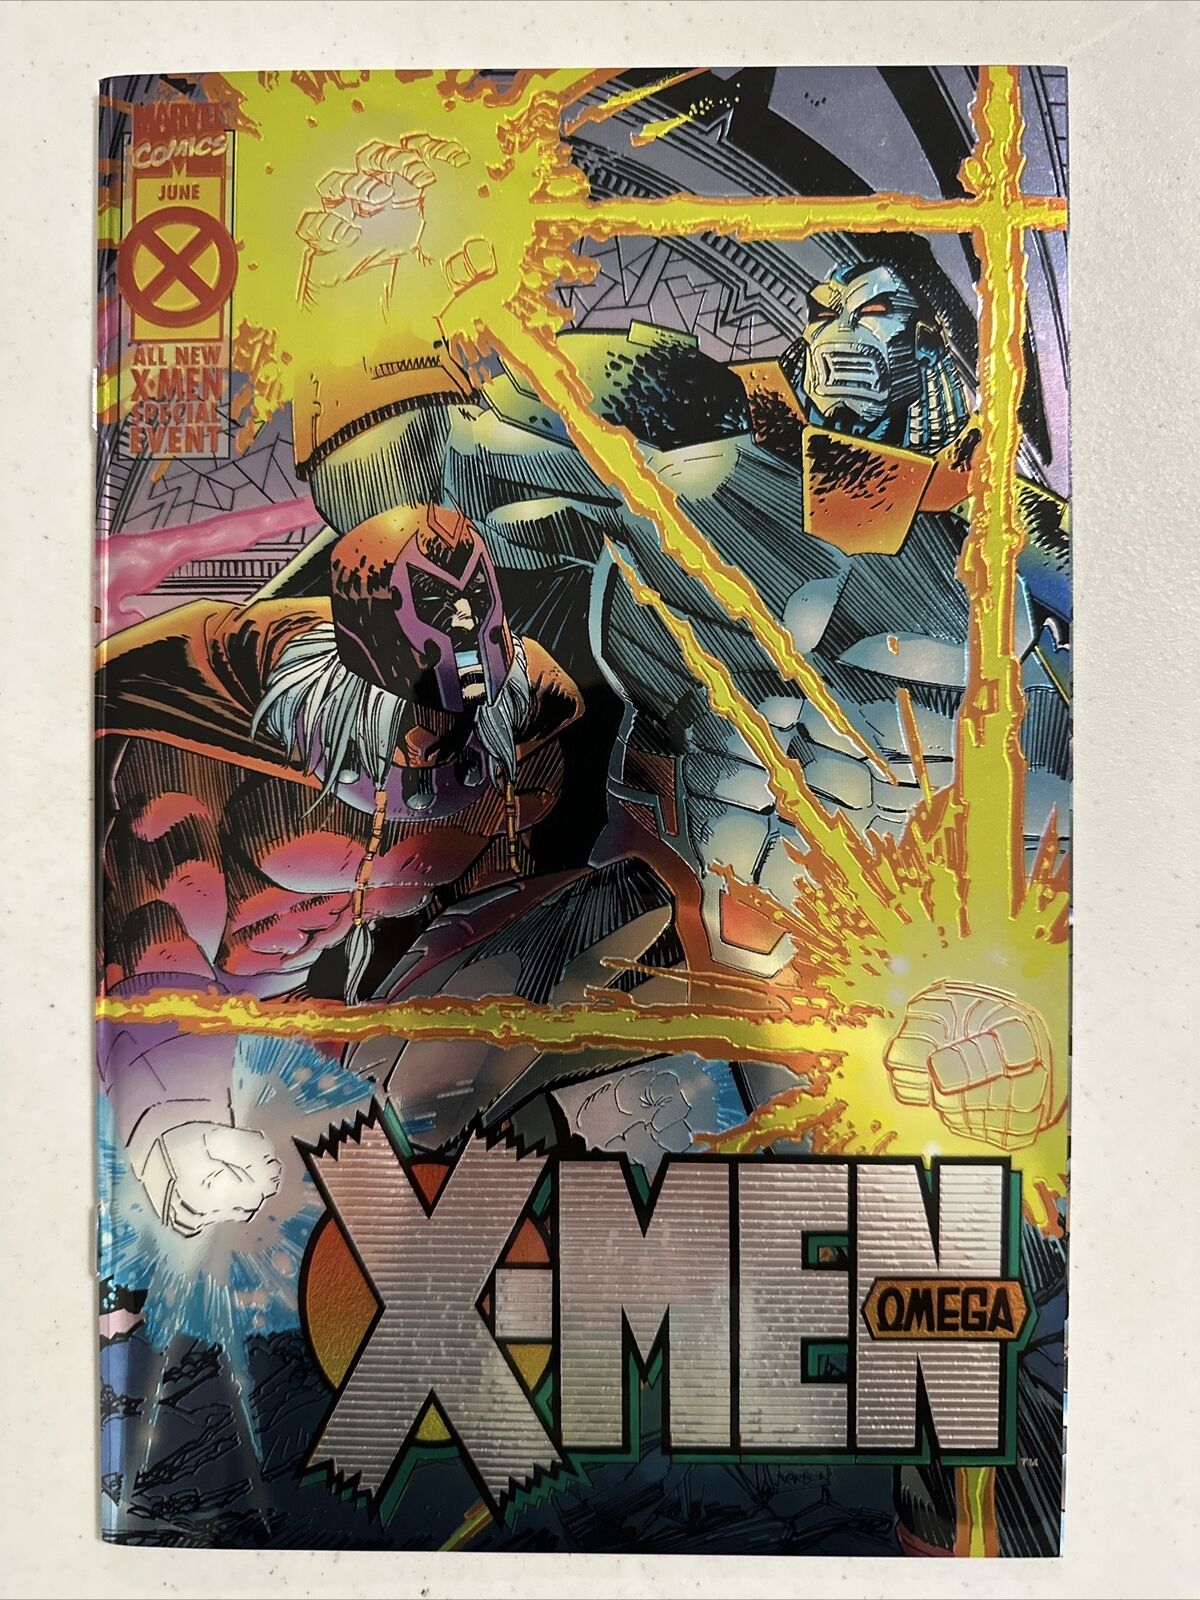 X-Men Omega #1 Marvel Comics HIGH GRADE COMBINE S&H